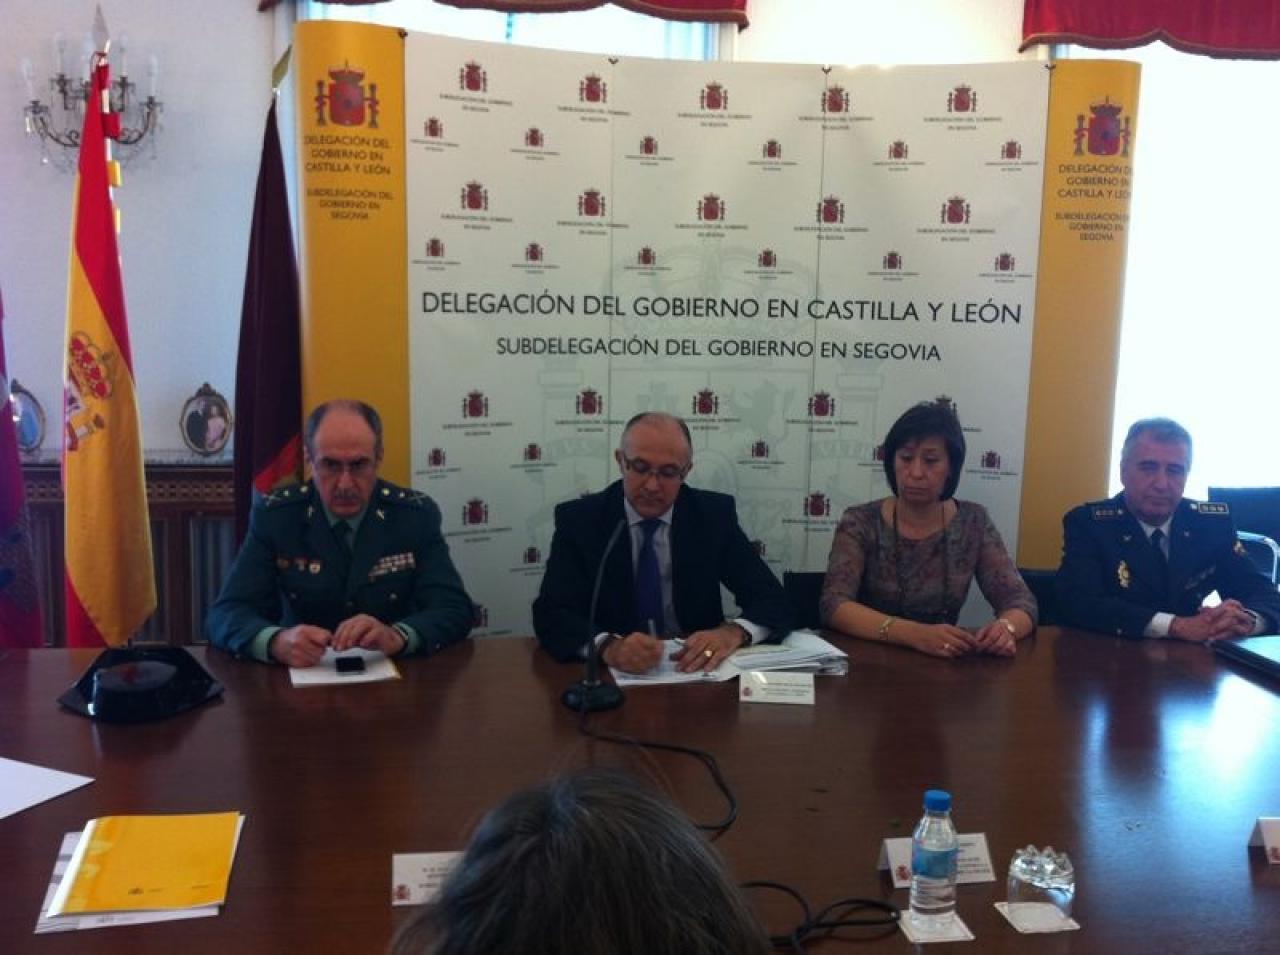 Ramiro Ruiz Medrano preside en Segovia la Comisión Territorial de Asistencia al Delegado del Gobierno